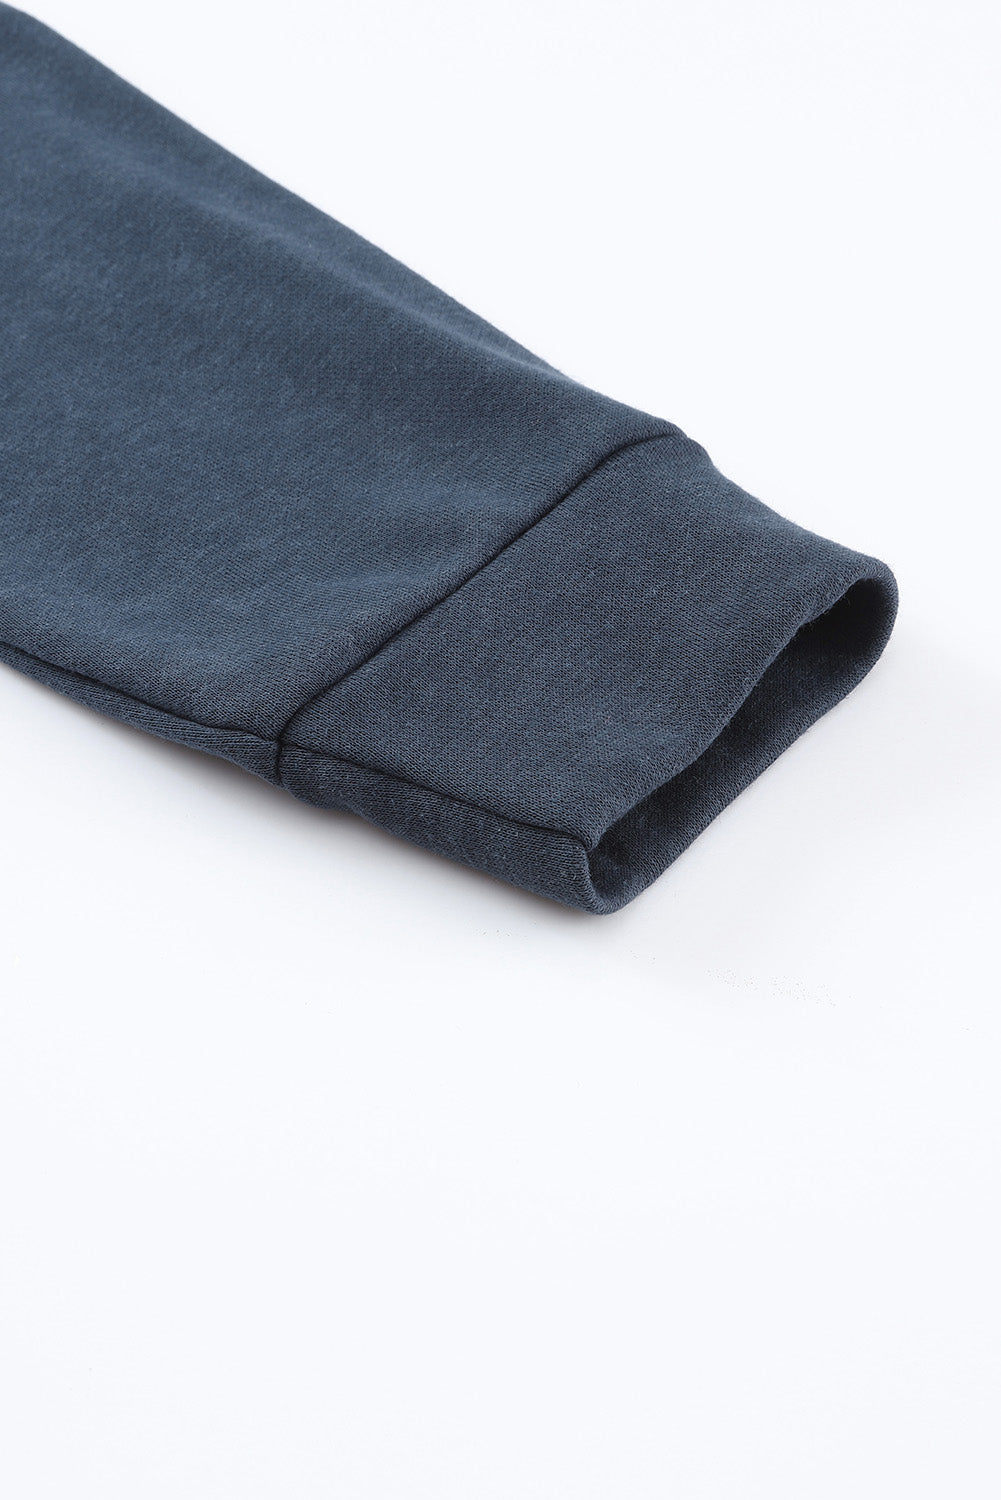 Blaue, verwaschene Vintage-Kapuzenjacke mit Waffel-Patchwork-Muster